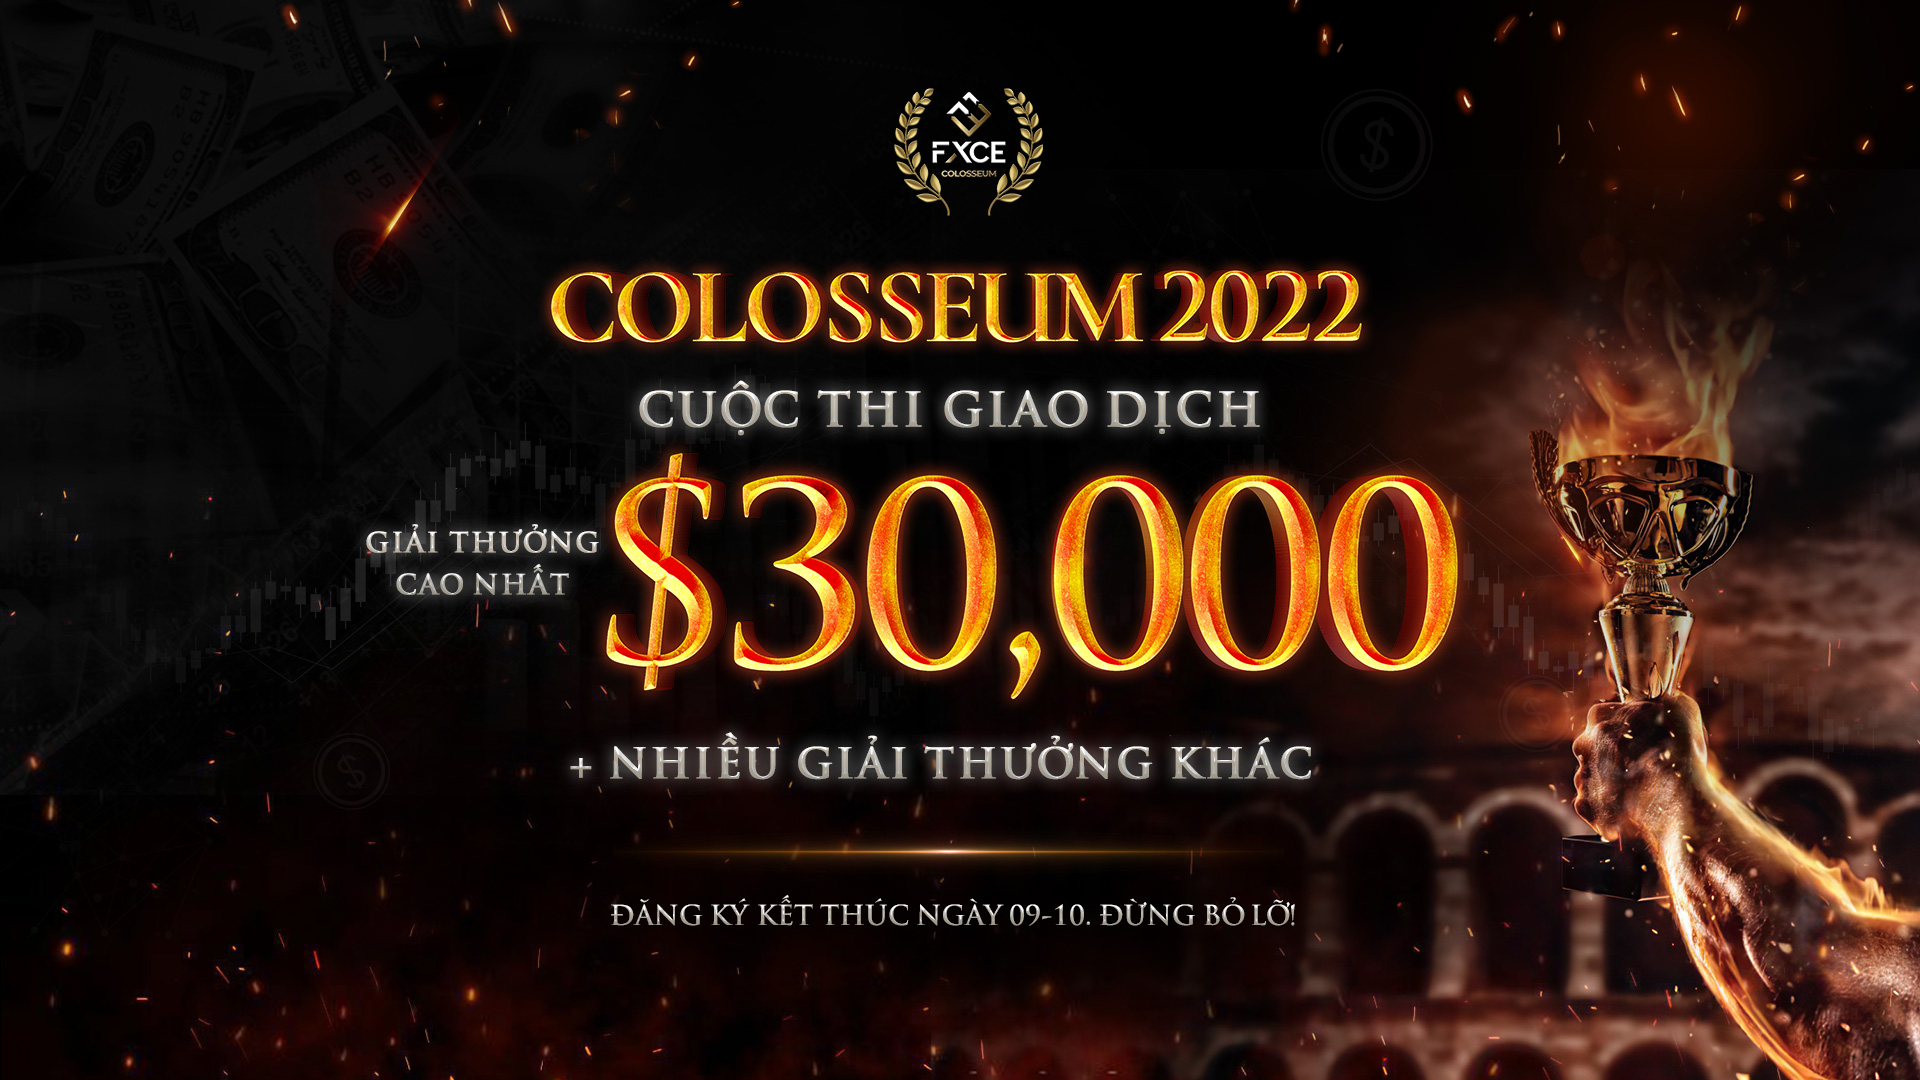 COLOSSEUM 2022: Tìm hiểu cuộc thi giao dịch hot nhất hiện nay